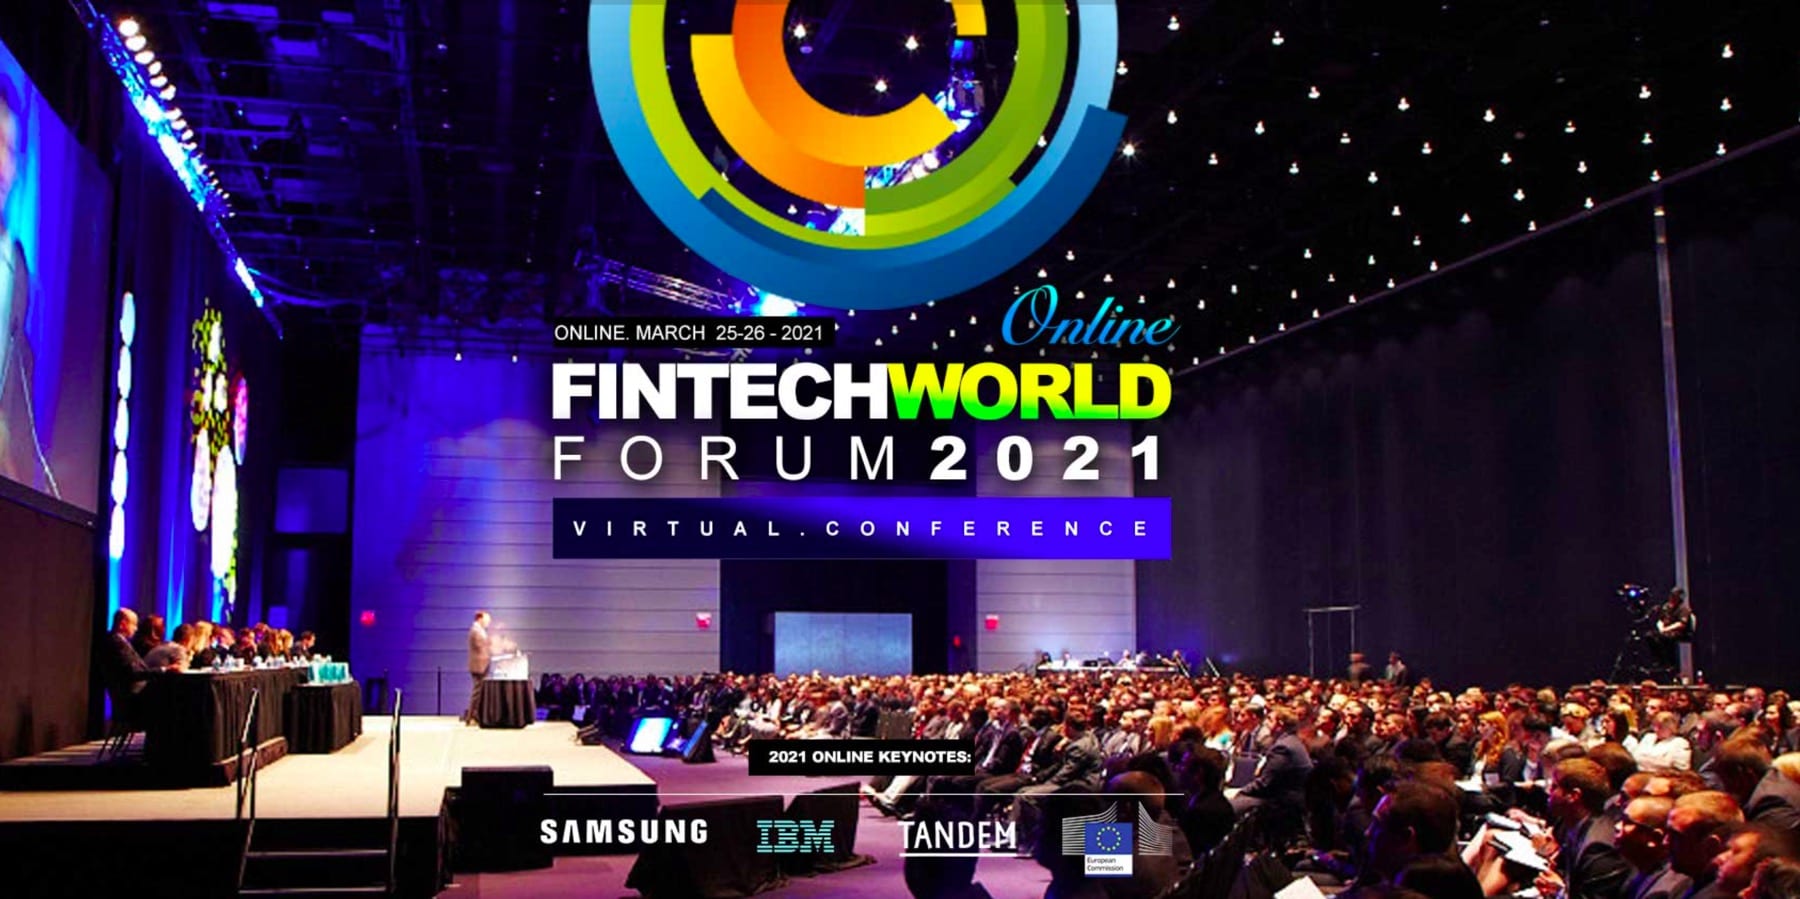 Fintech World Forum 2021